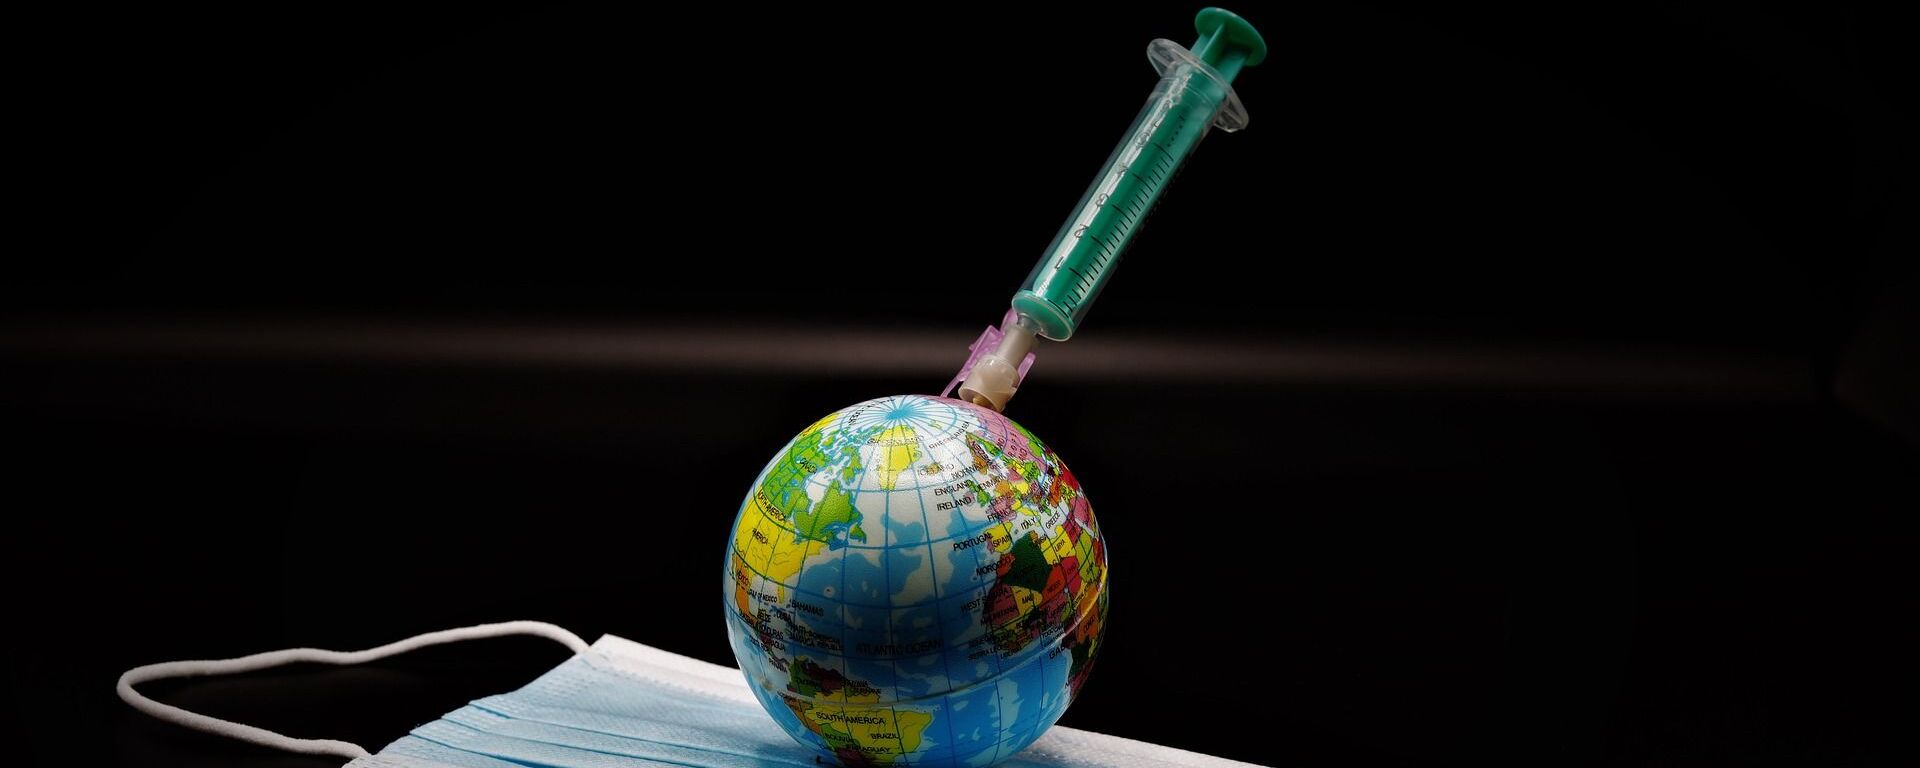 Un globo, una vacuna y una mascarilla durante el brote de coronavirus en el mundo - Sputnik Mundo, 1920, 18.01.2021